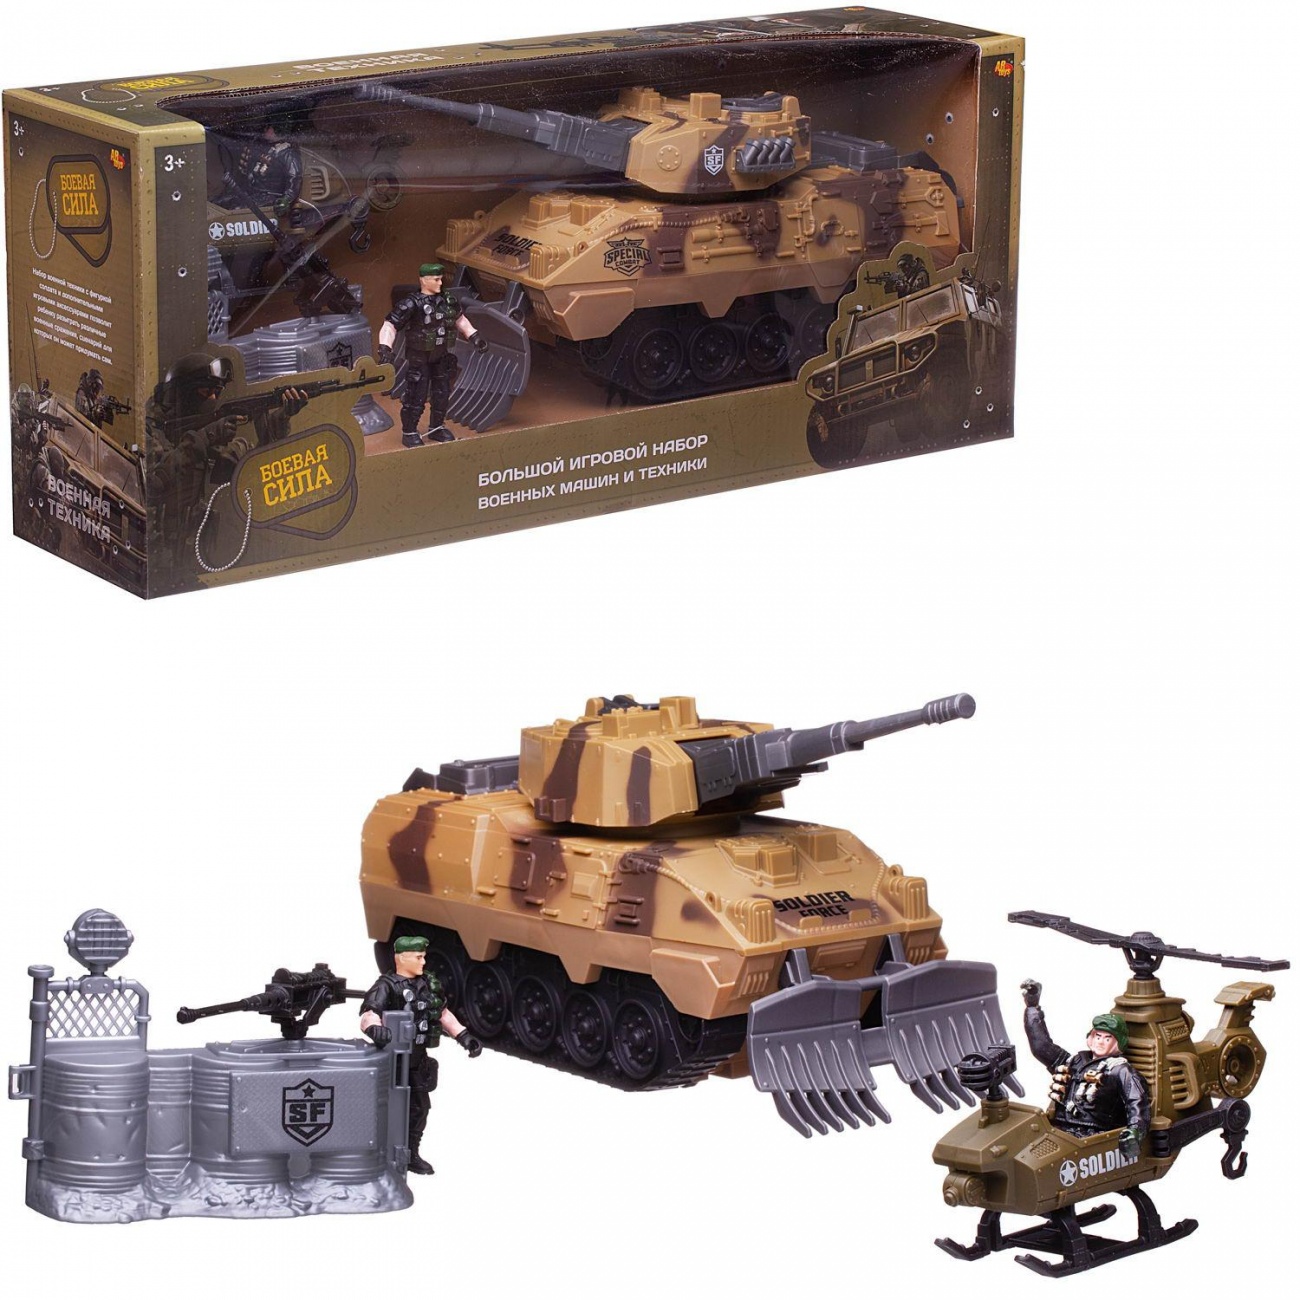 Игровой набор Abtoys Боевая сила: танк, вертолет, баррикада, 2 фигурки солдат PT-01668